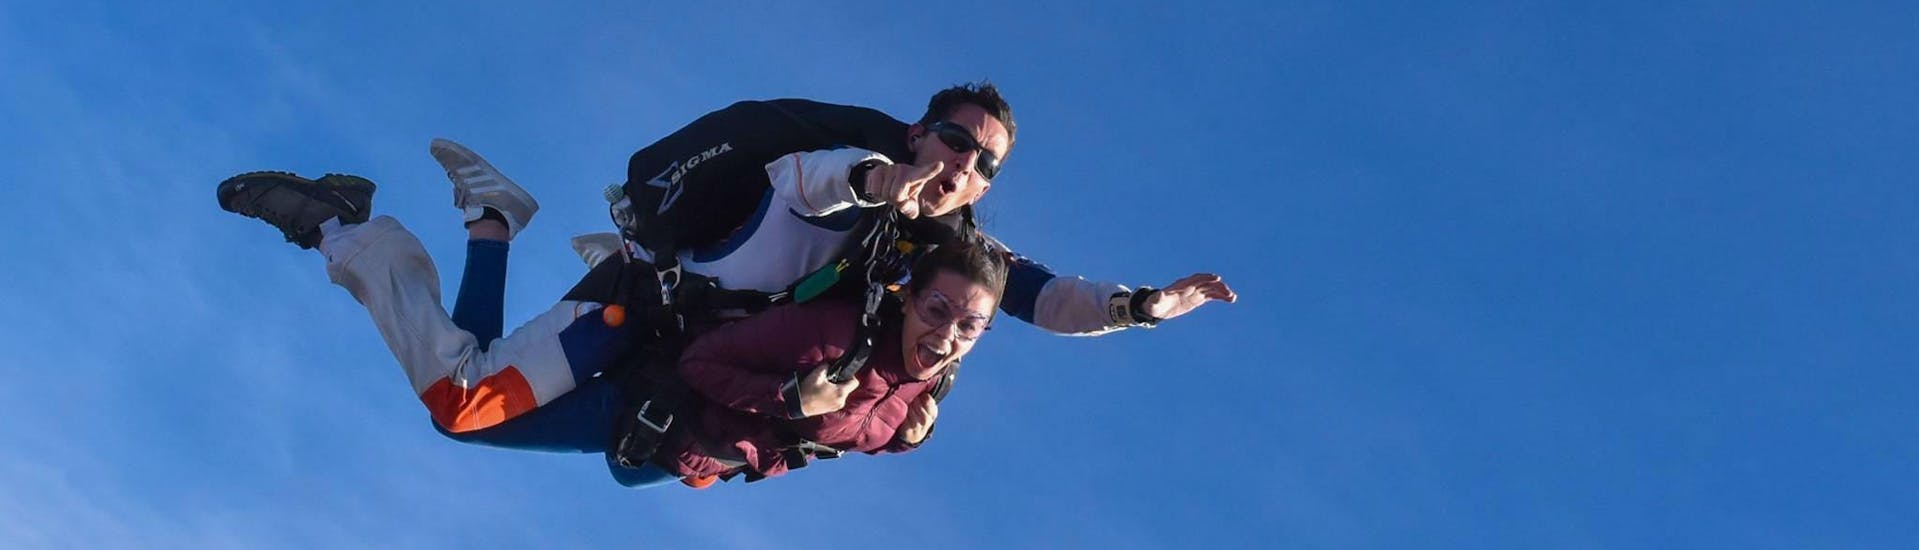  Un pilote de tandem de Skydive Center saute en parachute avec un passager à une altitude de 4 000 m et est en chute libre.